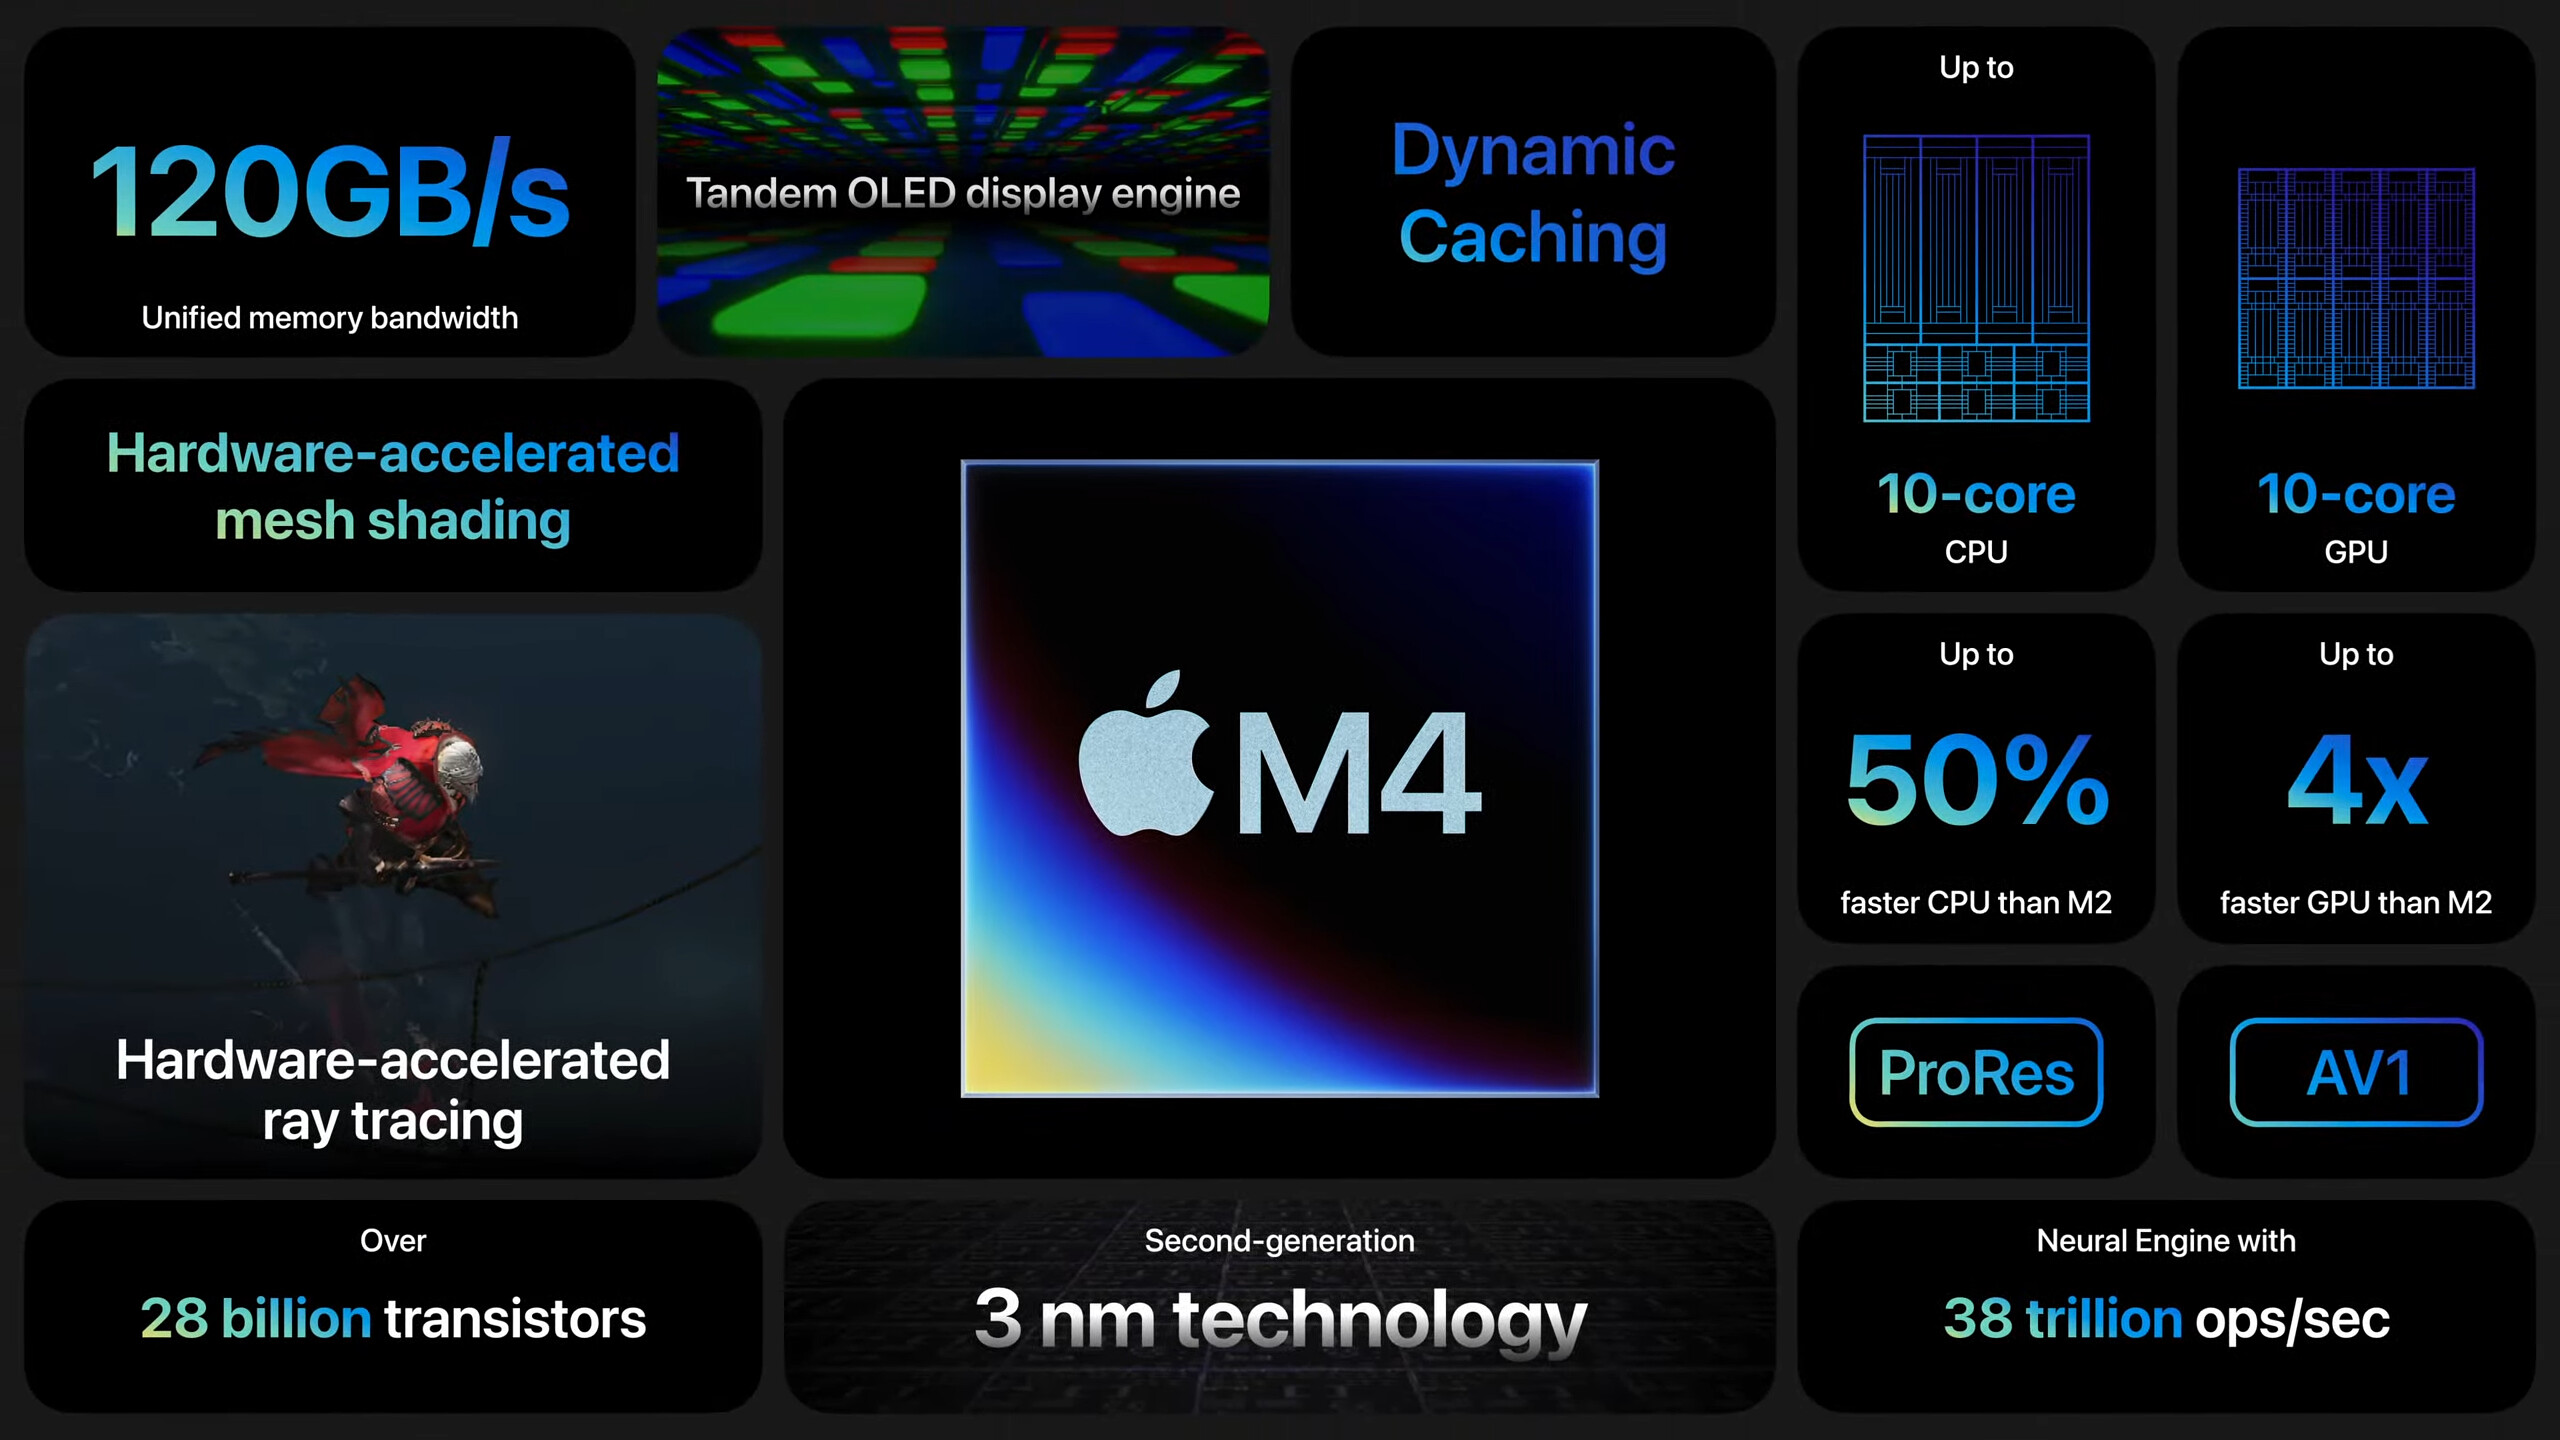 apple dévoile son nouvel ipad pro : un bond en avant vers l’oled et la puce m4 ultra-puissante